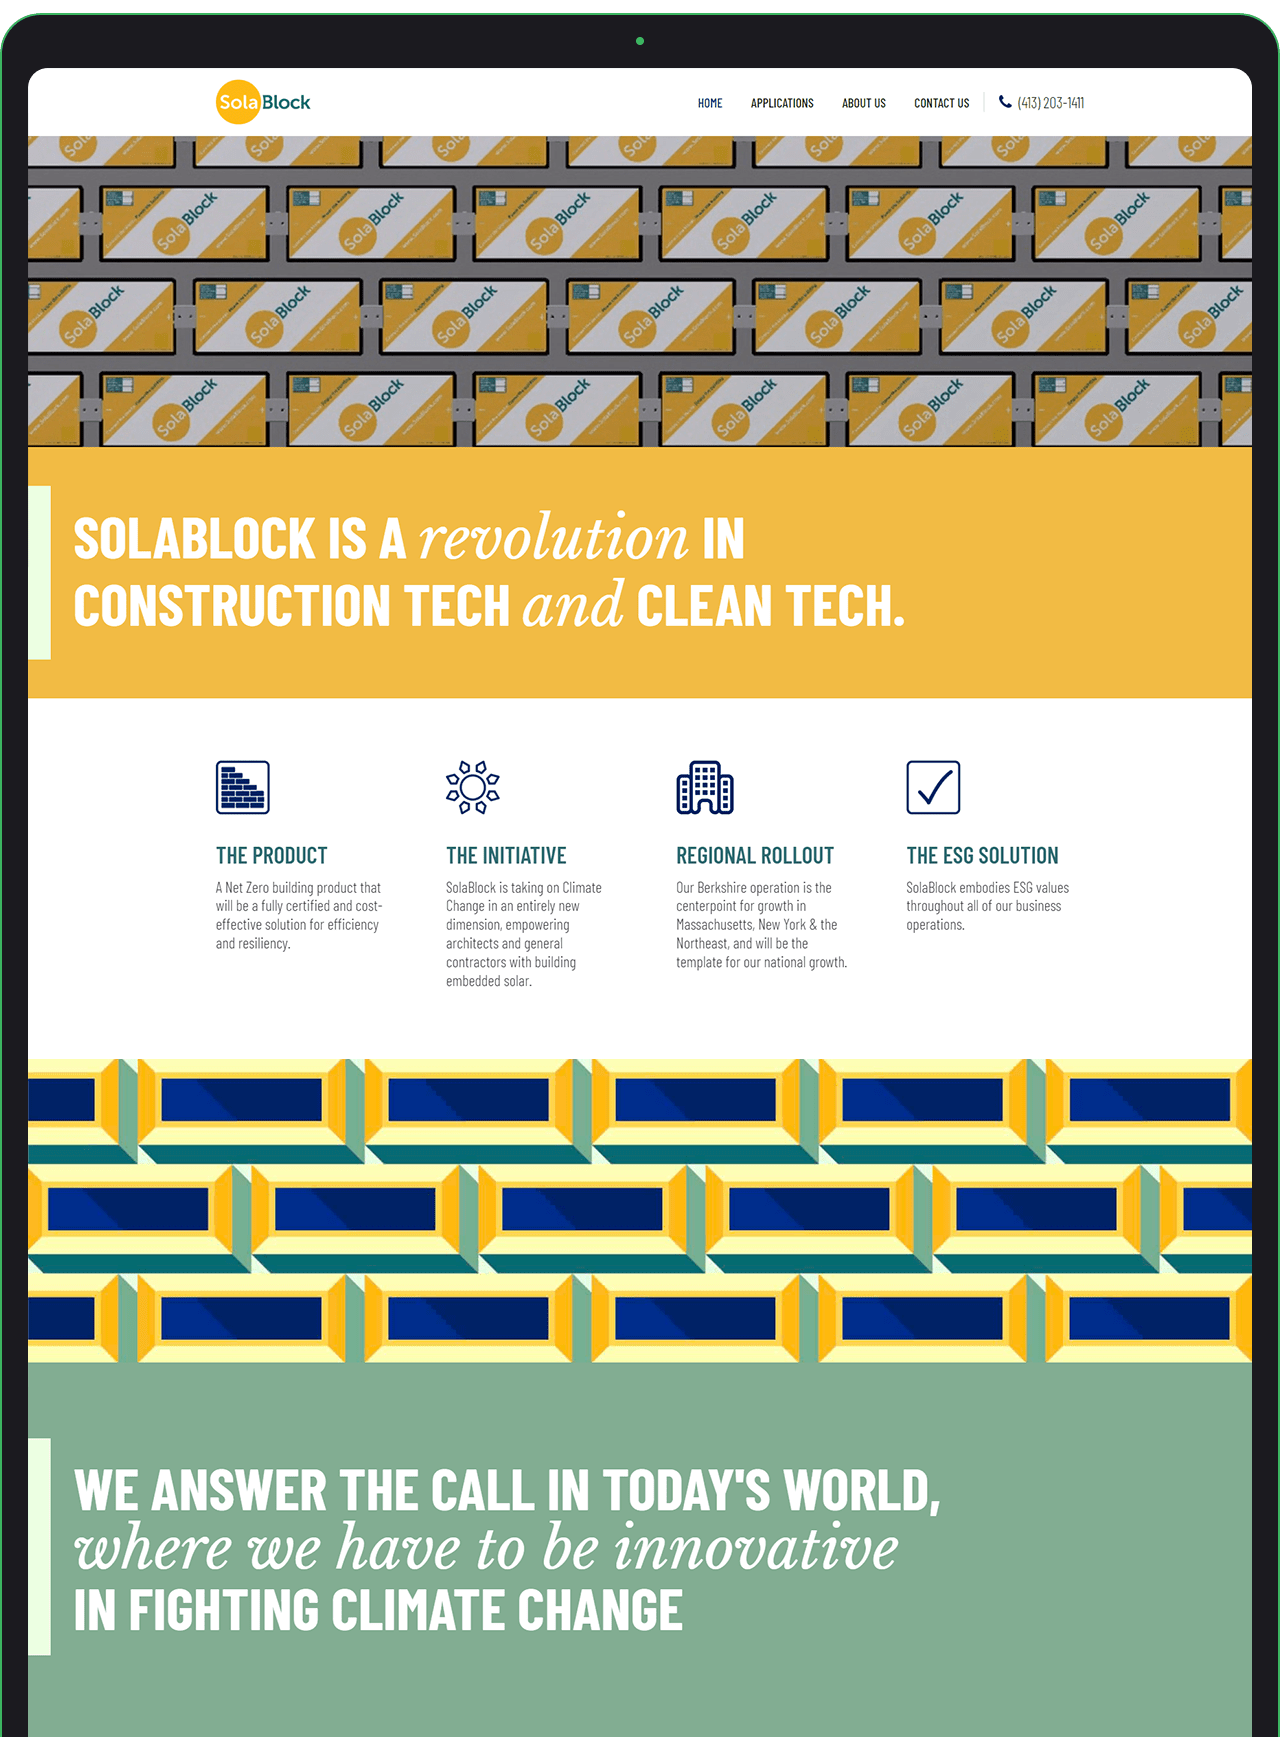 SolaBlock, Inc